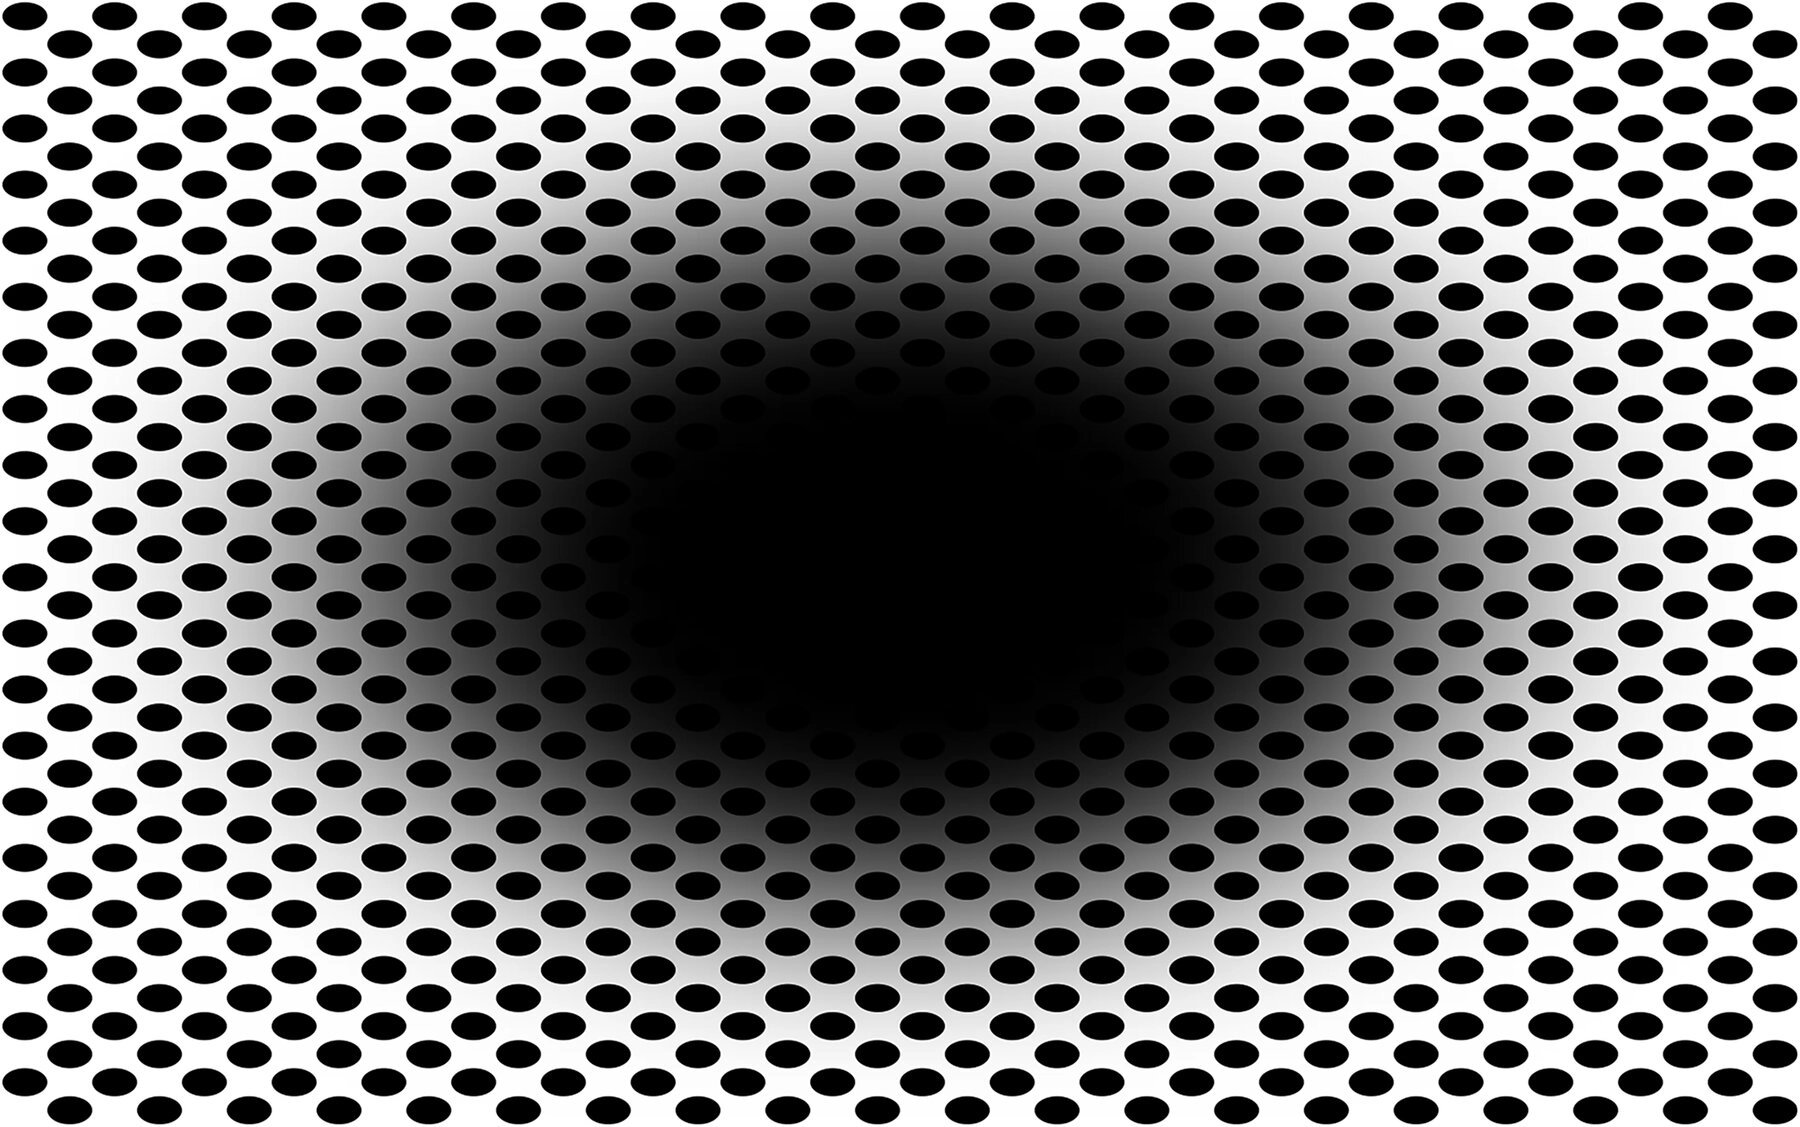 Ambiguous Expanding Black Hole Optical Illusion.